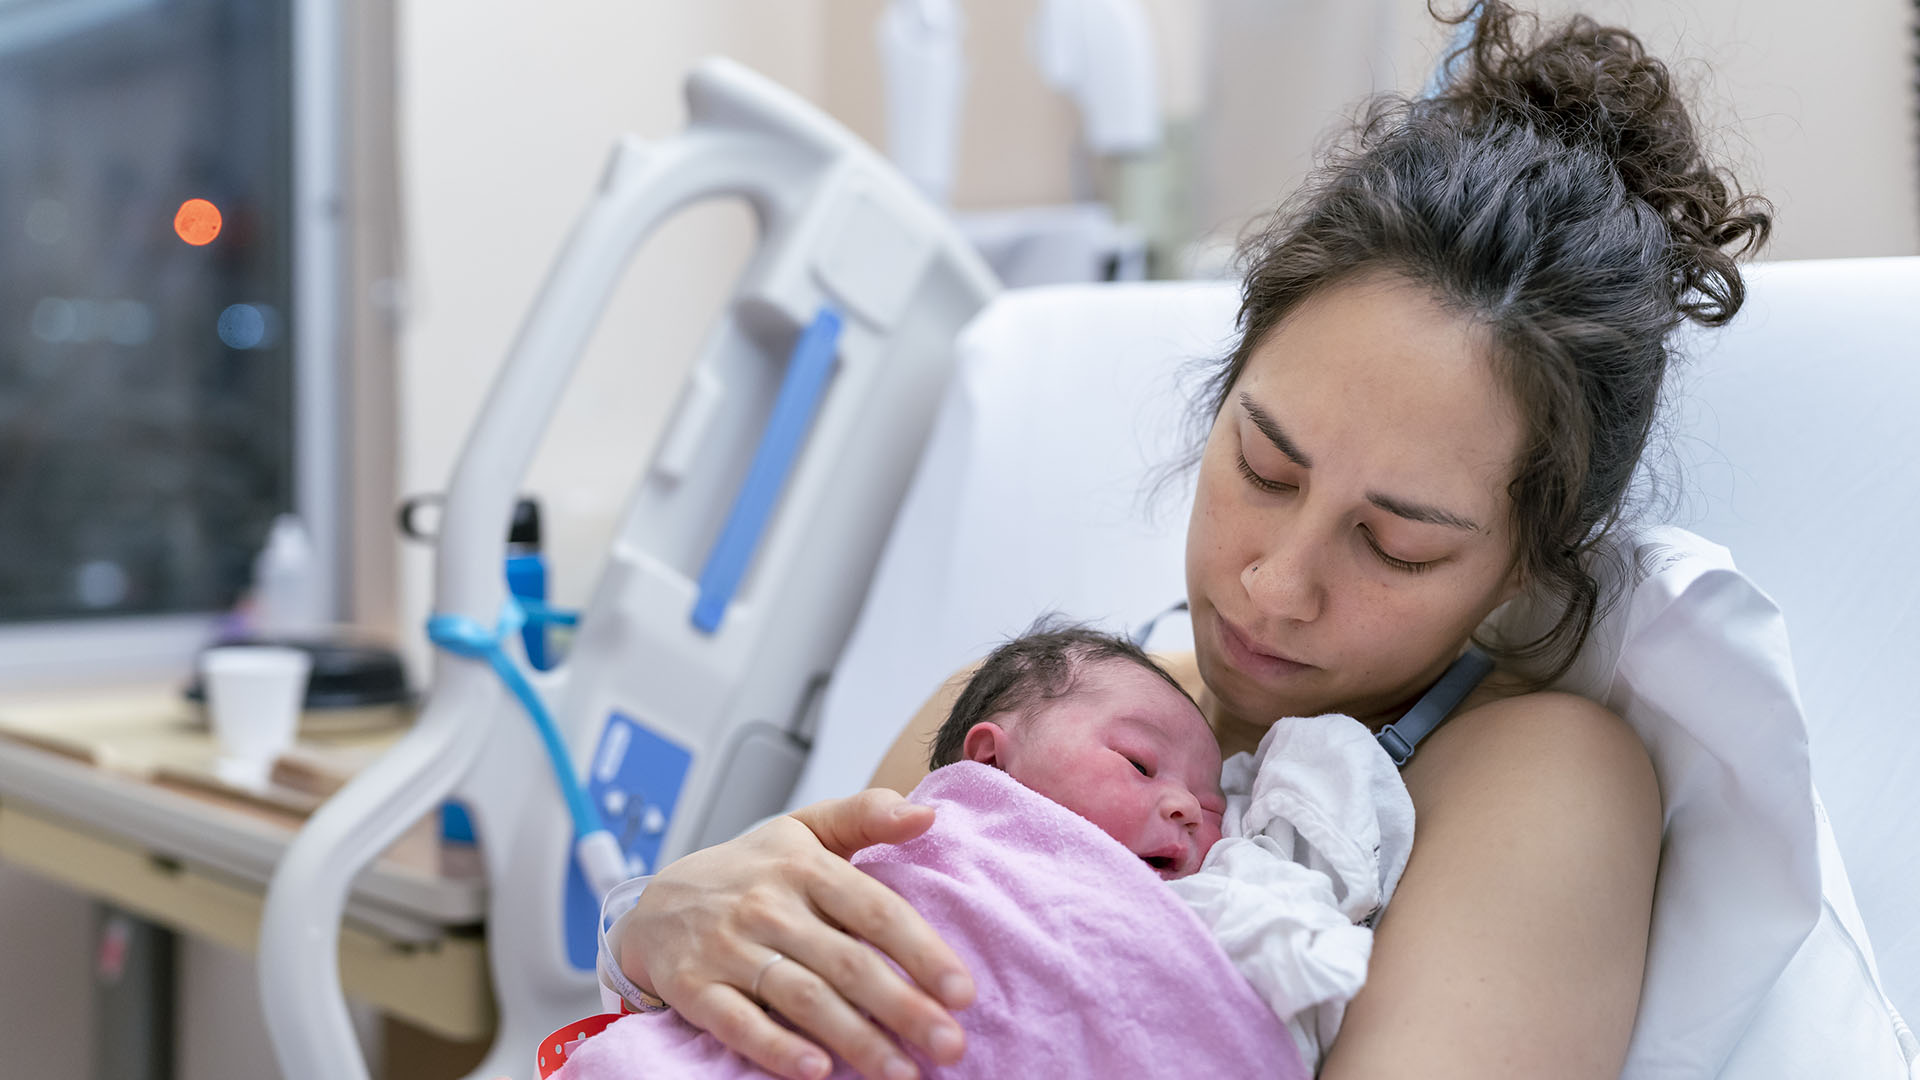 La investigación reveló conclusiones alarmantes, afirmando que 201 bebés podrían haber vivido si el hospital hubiera proporcionado una mejor atención (Getty Images)